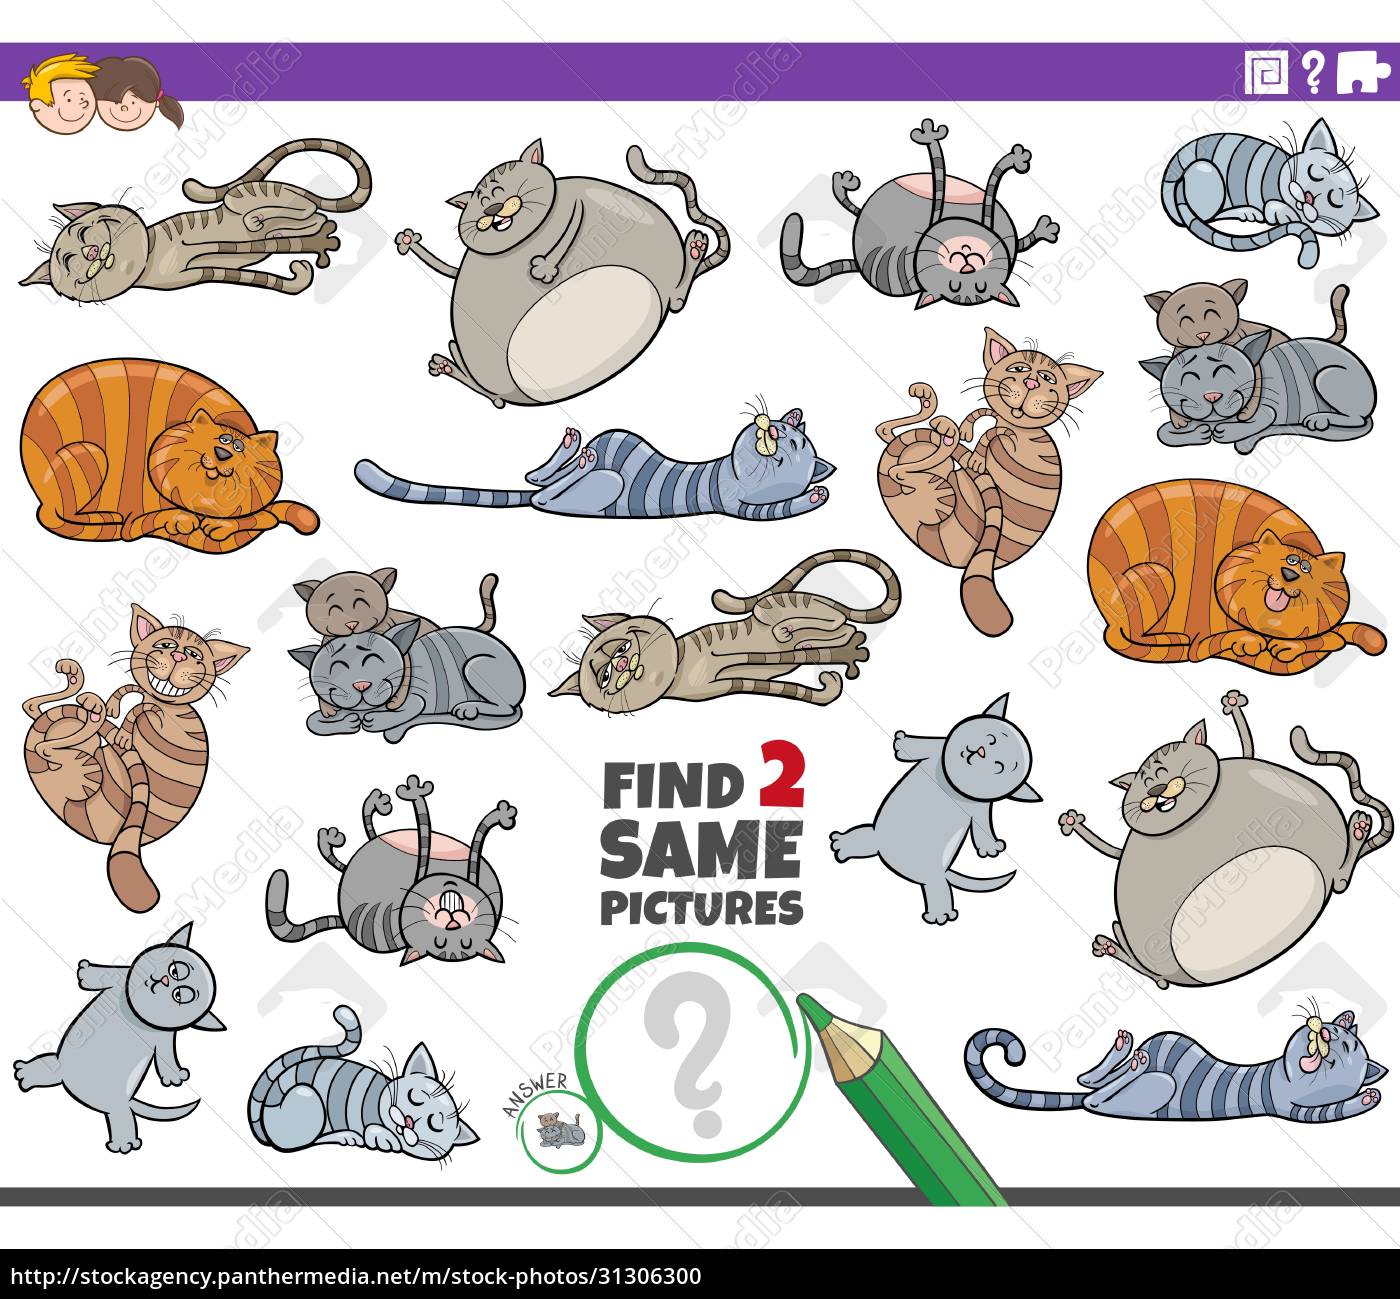 Jogo de quebra-cabeça com personagem de desenho animado gato